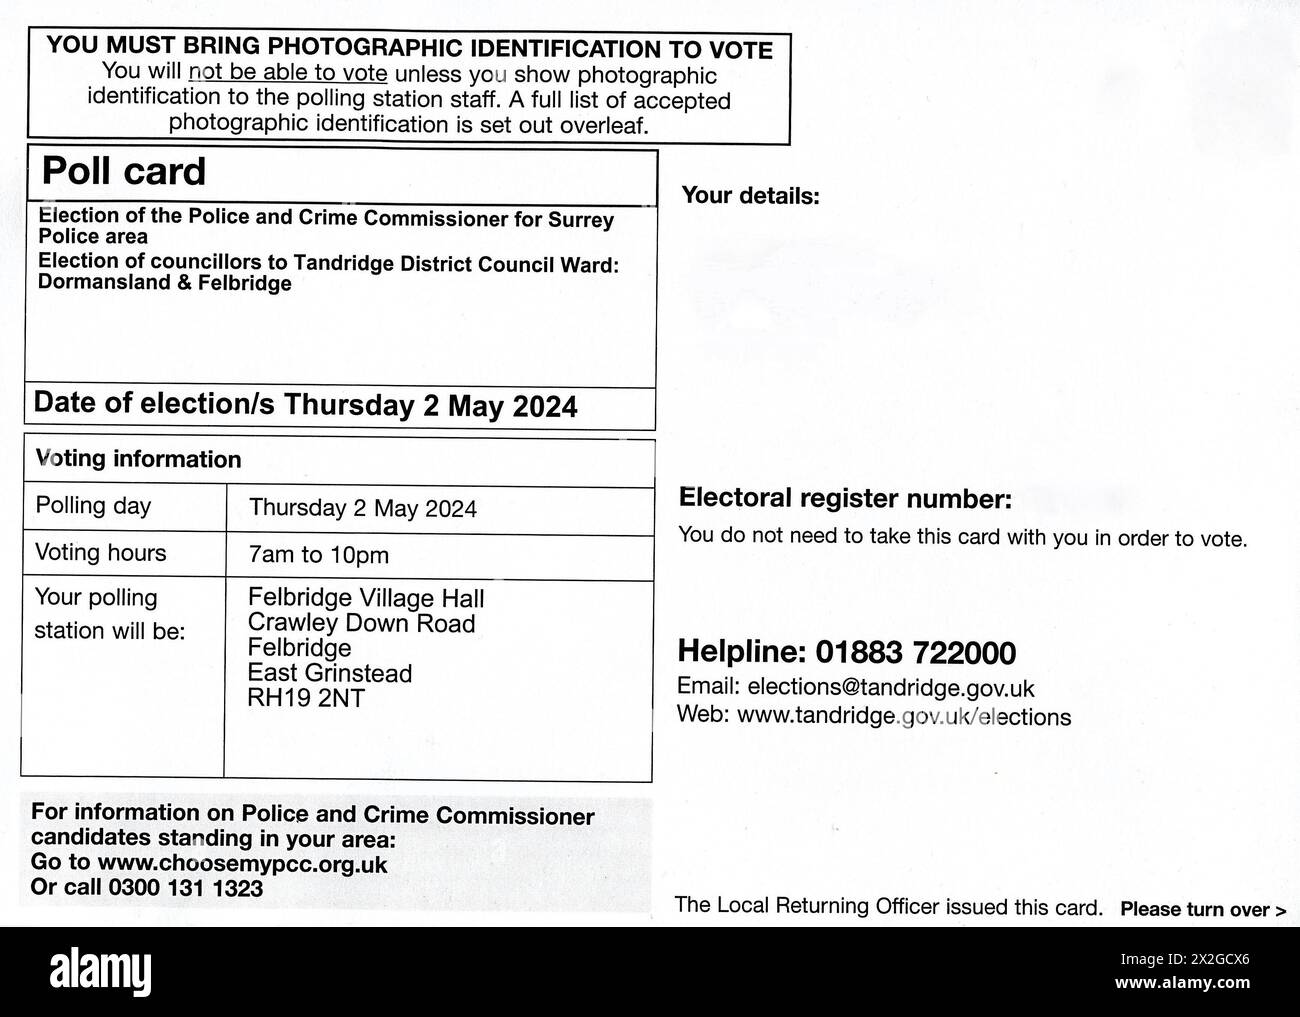 Scheda elettorale per le elezioni del governo locale britannico del 2 maggio 2024. La carta mostrata è per il Commissario della polizia e del crimine per il Surrey e per il ward Dormansland e Felbridge per il Consiglio Distrettuale di Tandridge. Foto Stock